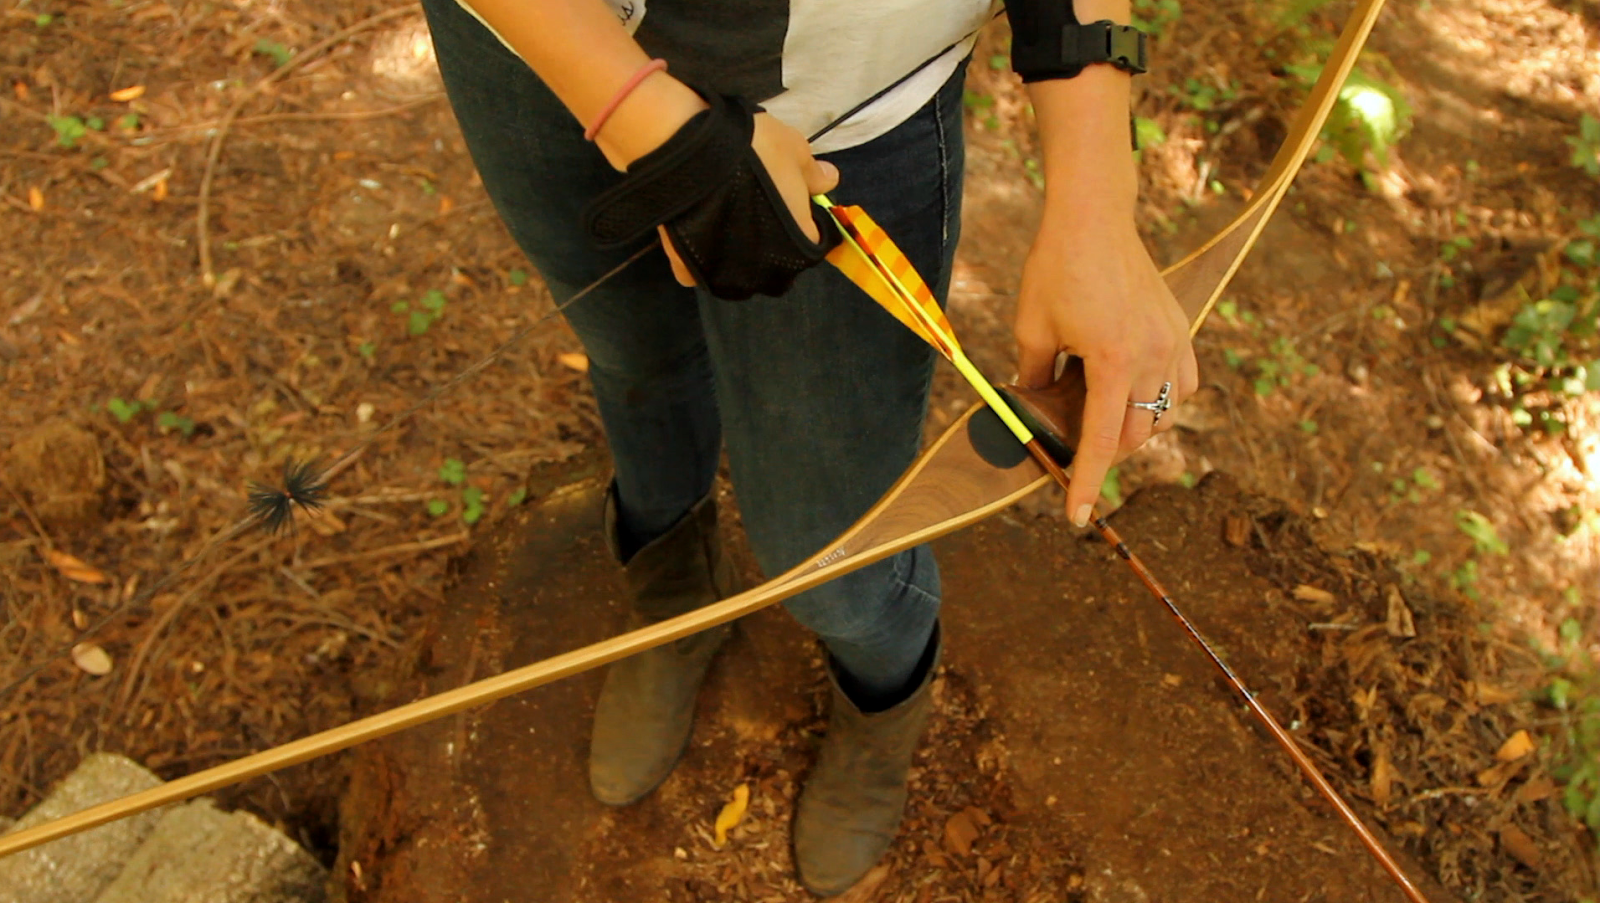 Indsprøjtning kollidere Glat Archery Instinct: 2015 Slick Stick by Bearpaw